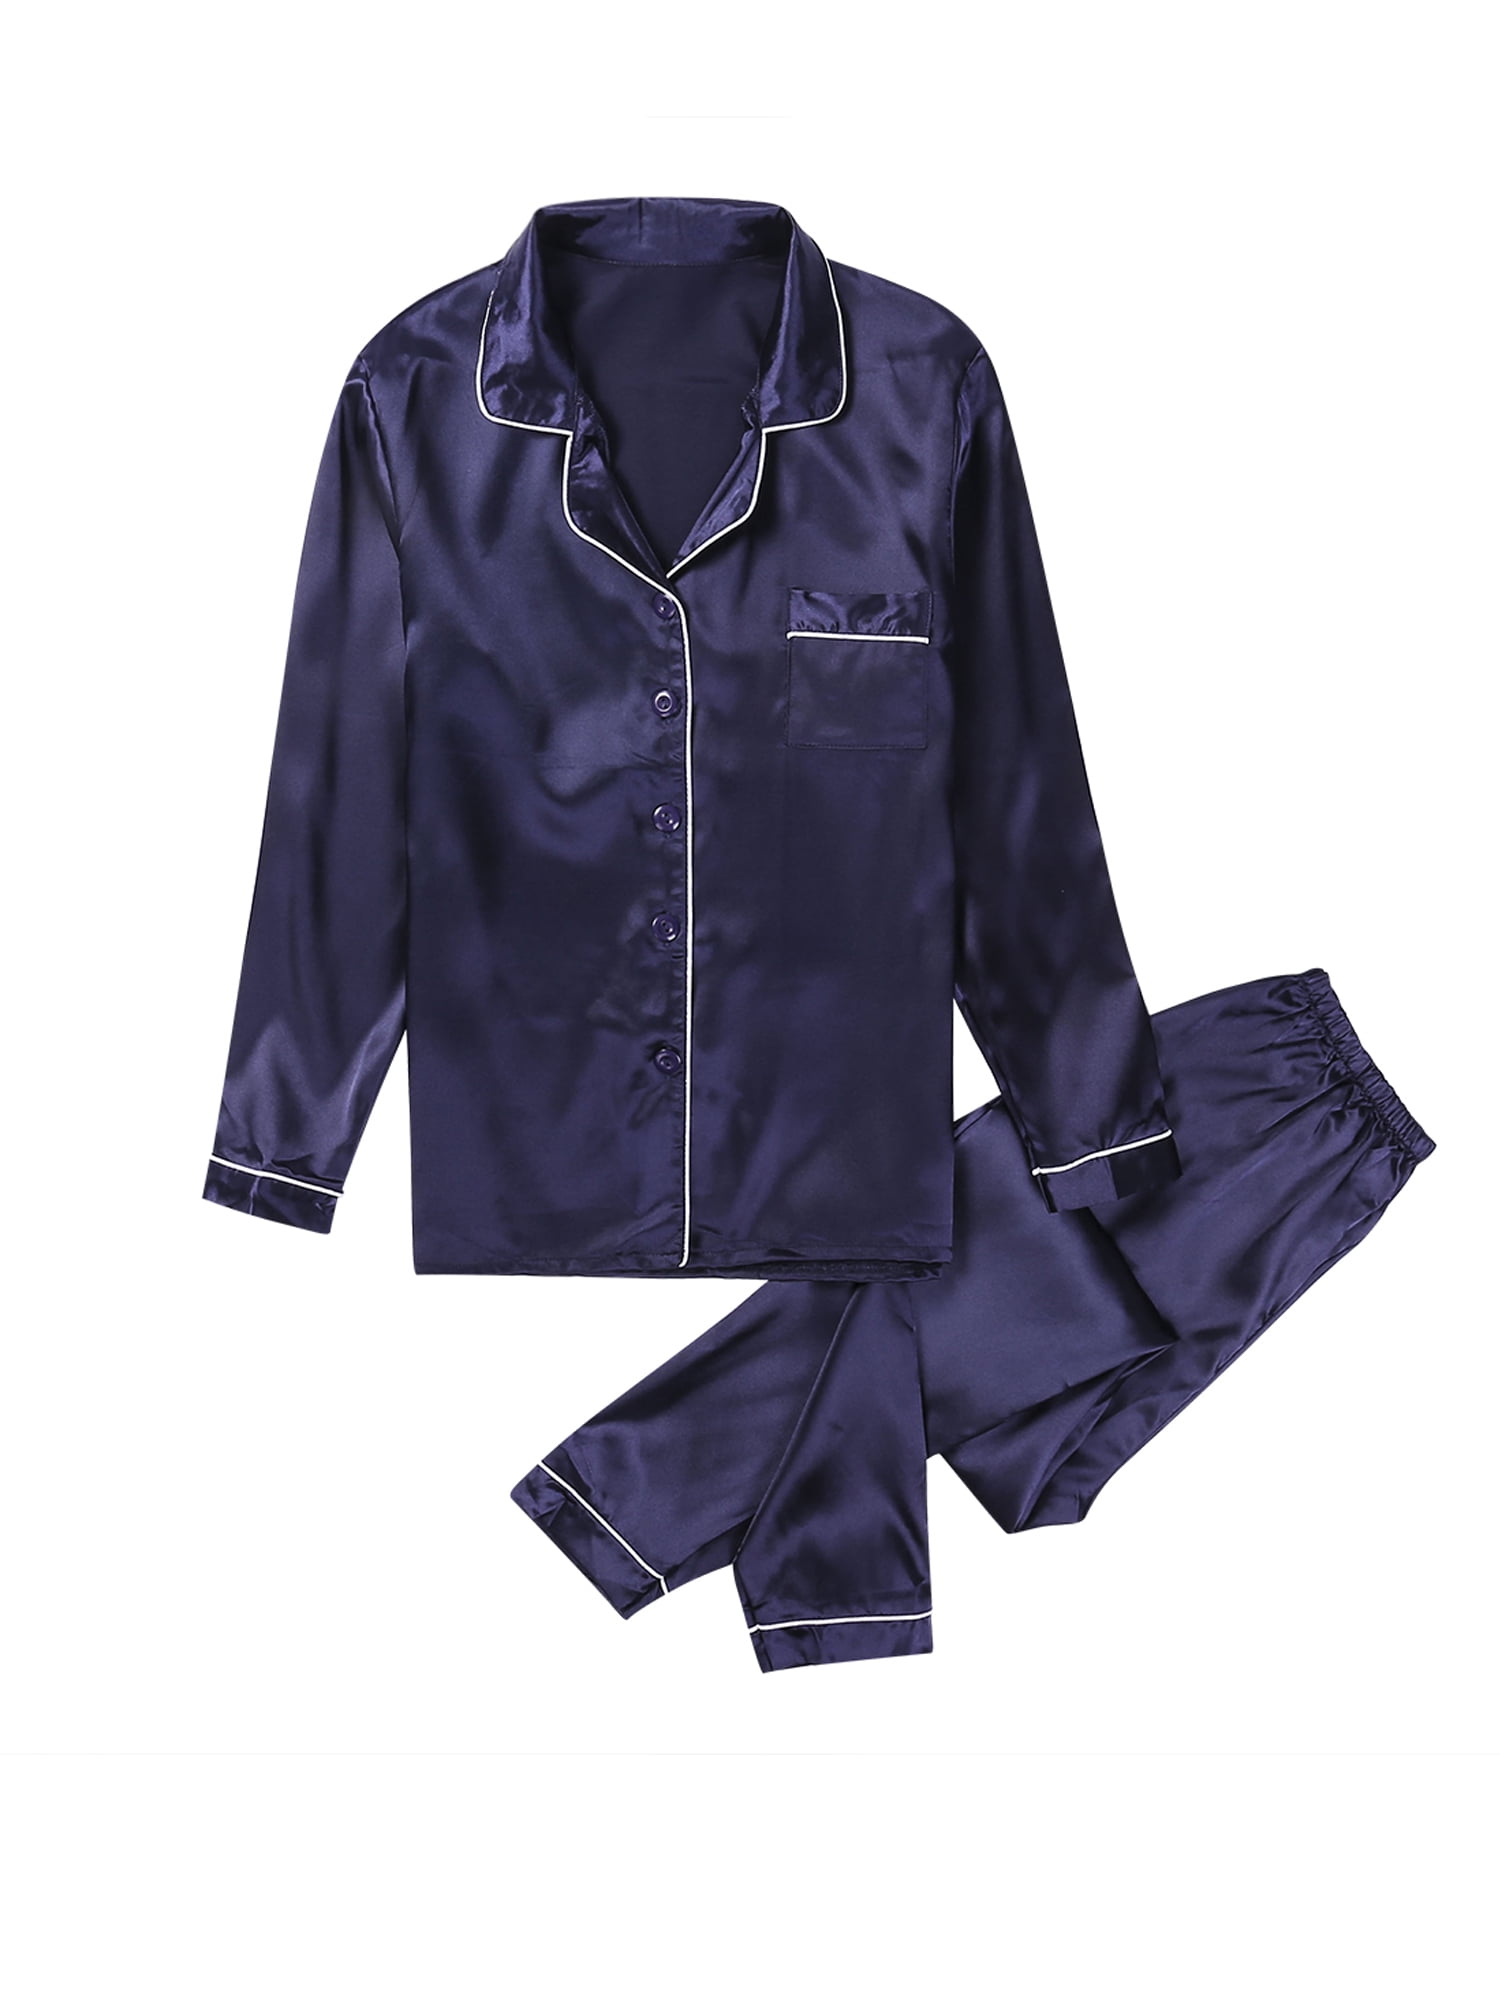 EDCRF Women'S Pajama Sets Silk Striped Pajama Set For Women Light Blue Silk  Pajamas Overnight Delivery Items Womens Satin Pj